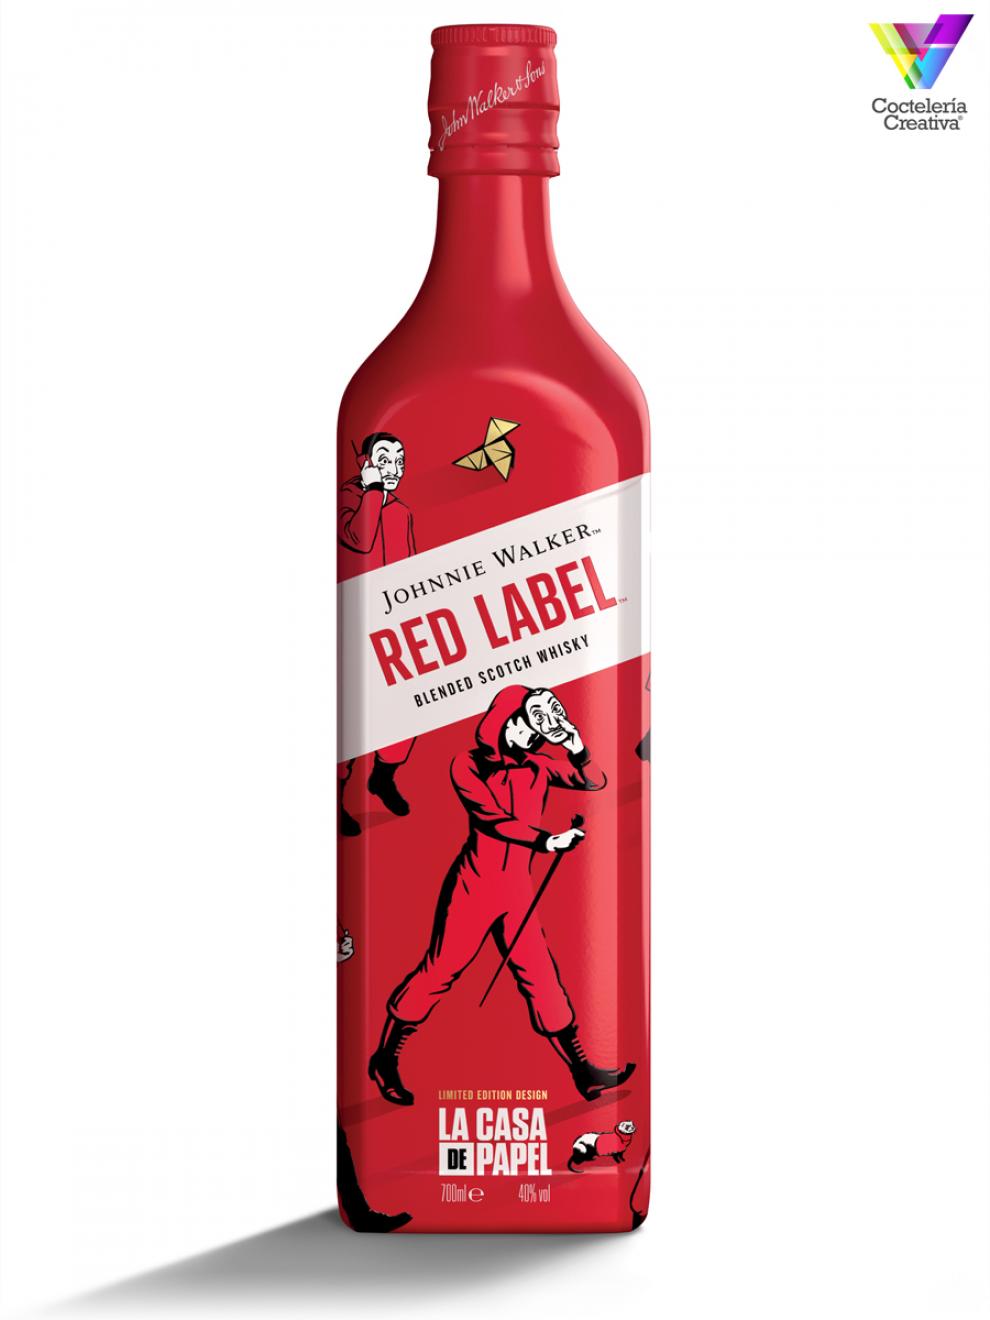 Botella Edición Limitada Johnnie Walker Red Label de La Casa de Papel